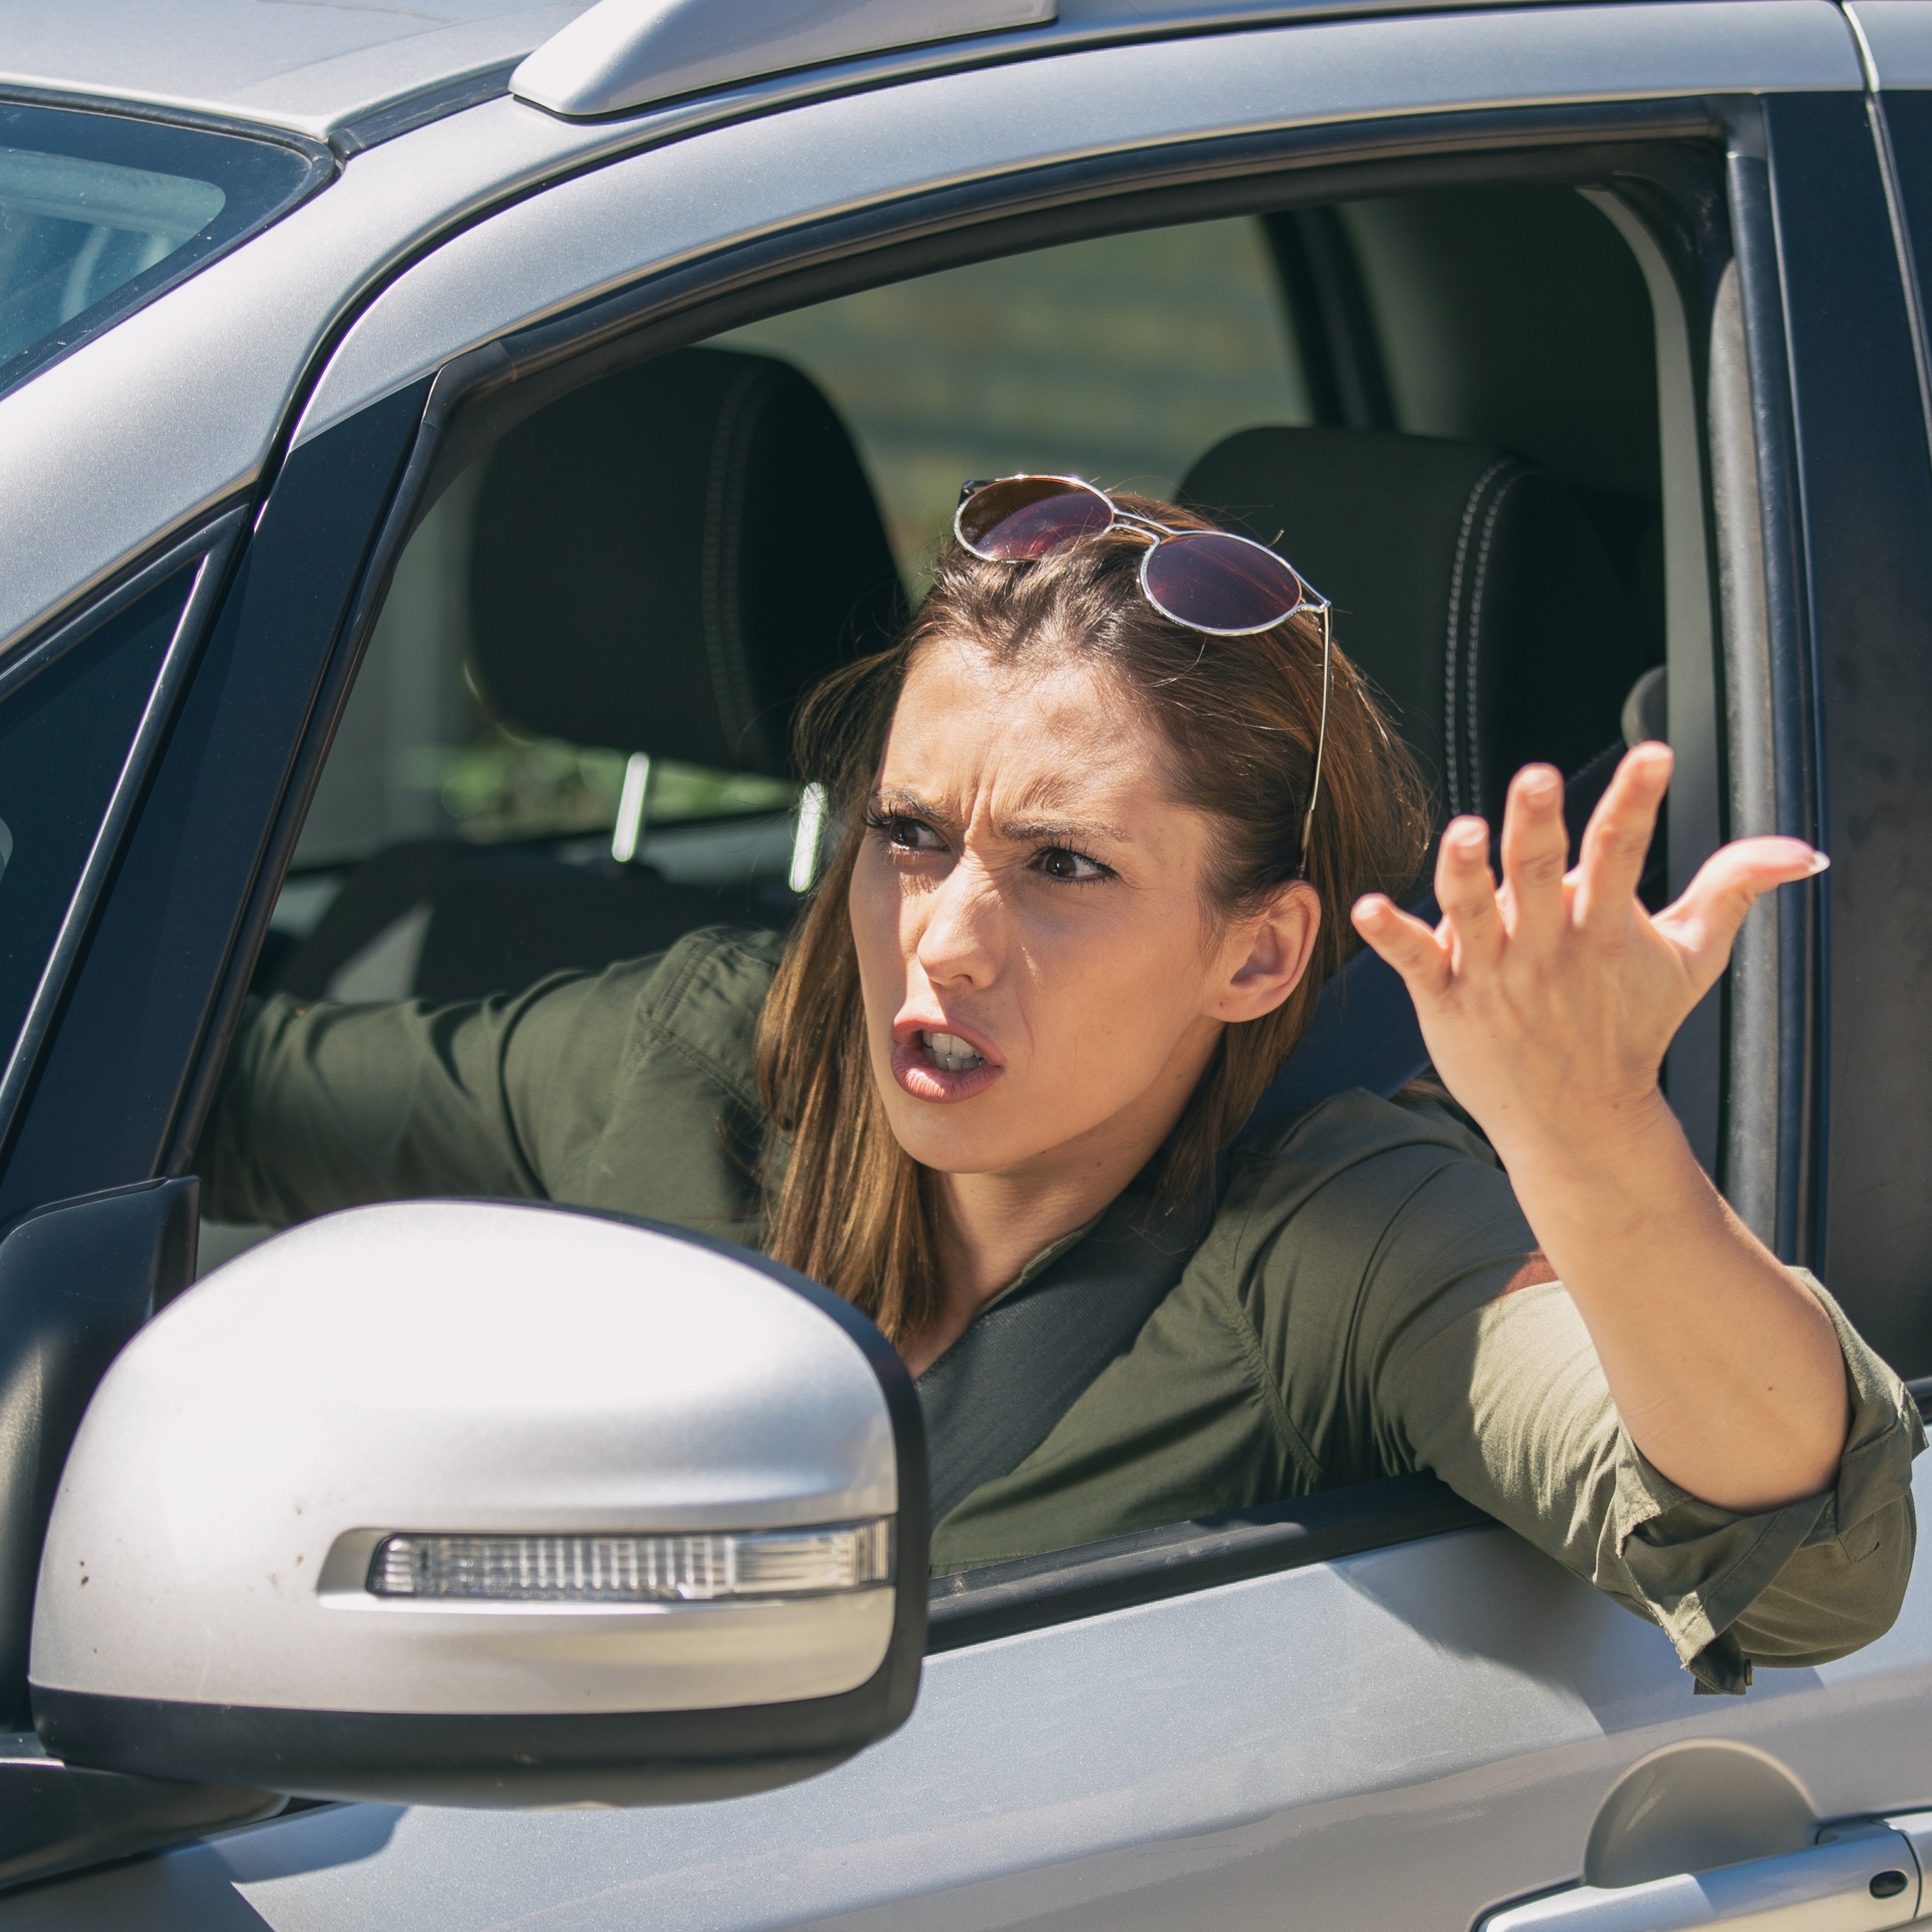 Eine Frau sitzt am Steuer eines Autos und gestikuliert aus dem geöffneten Fenster. Sie schaut verärgert.